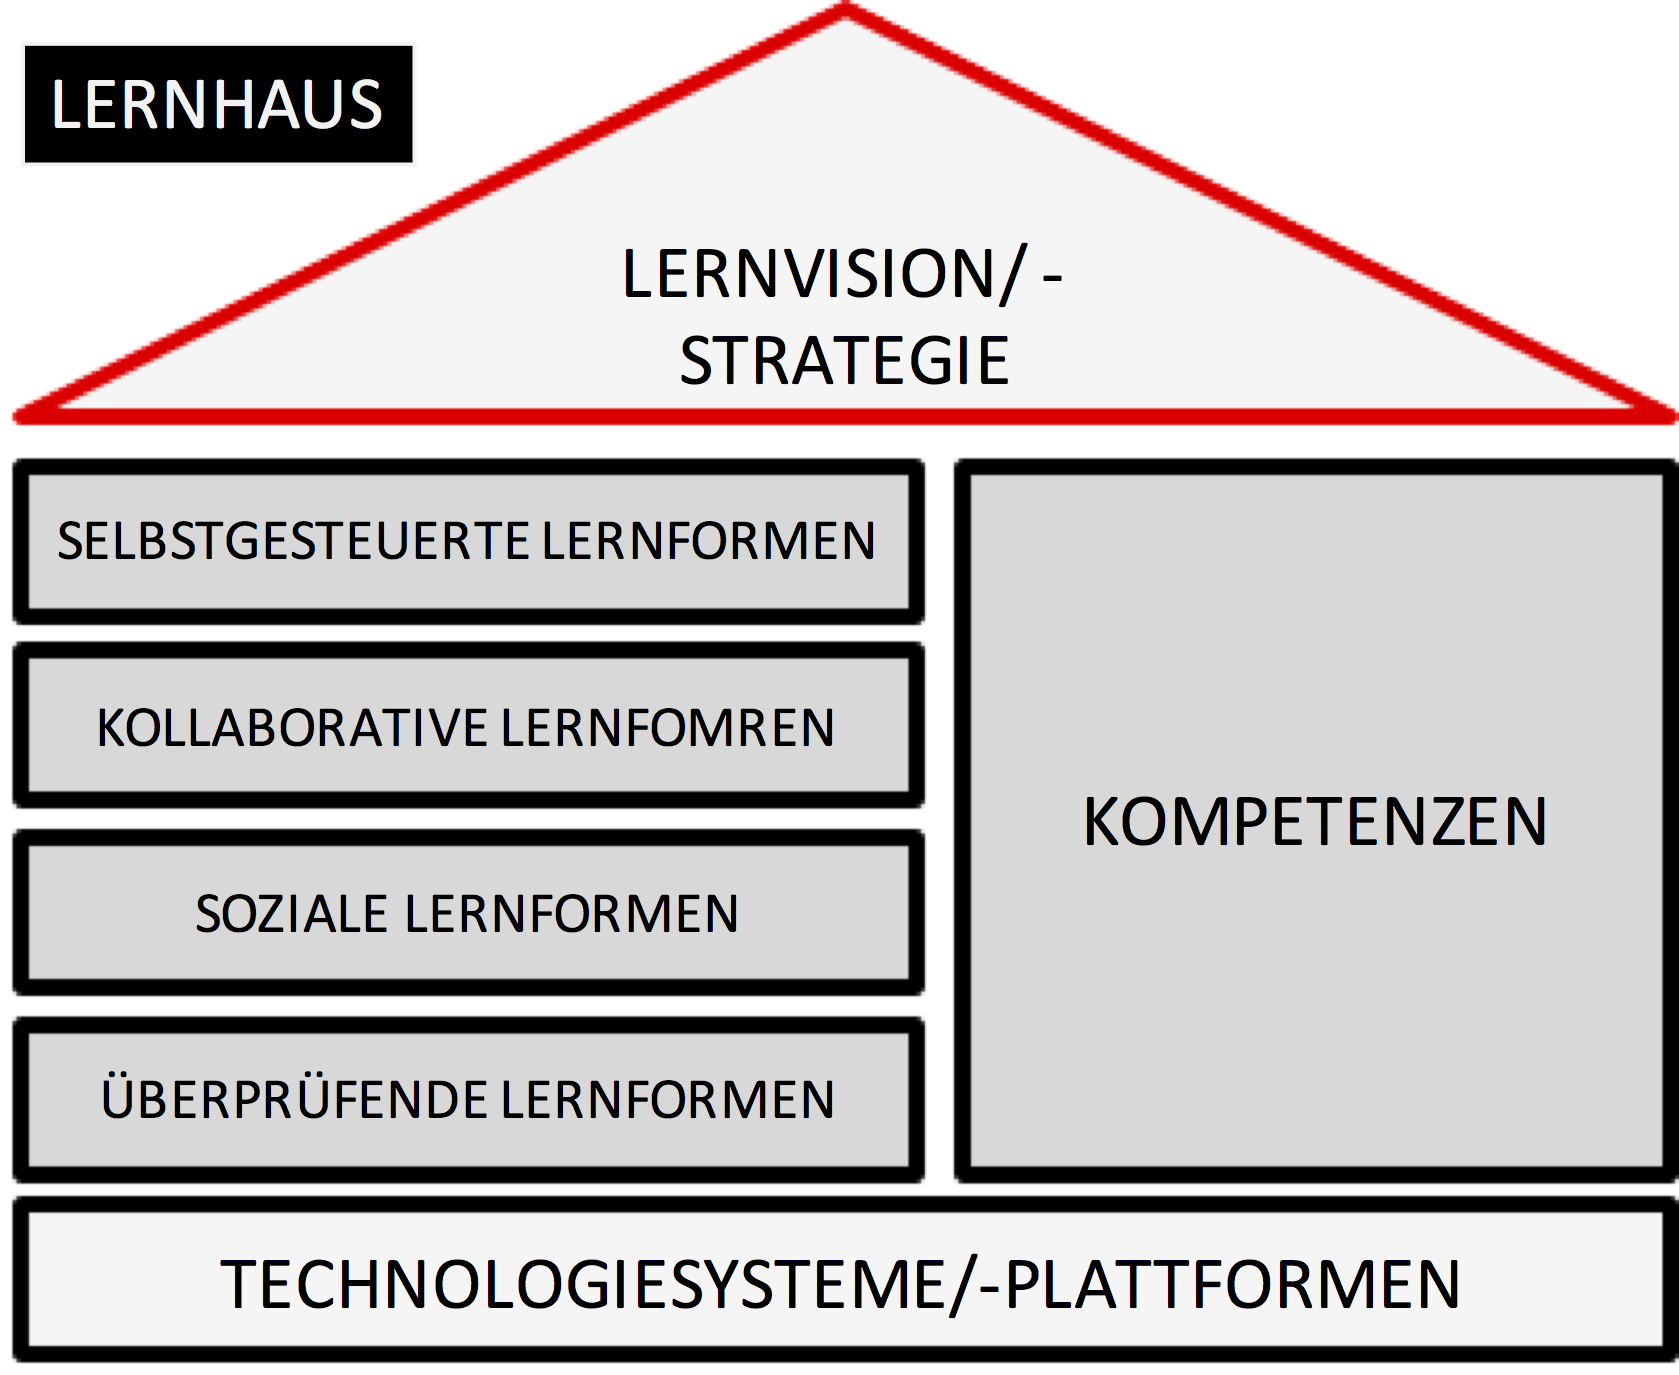 Lernhaus_Strategie